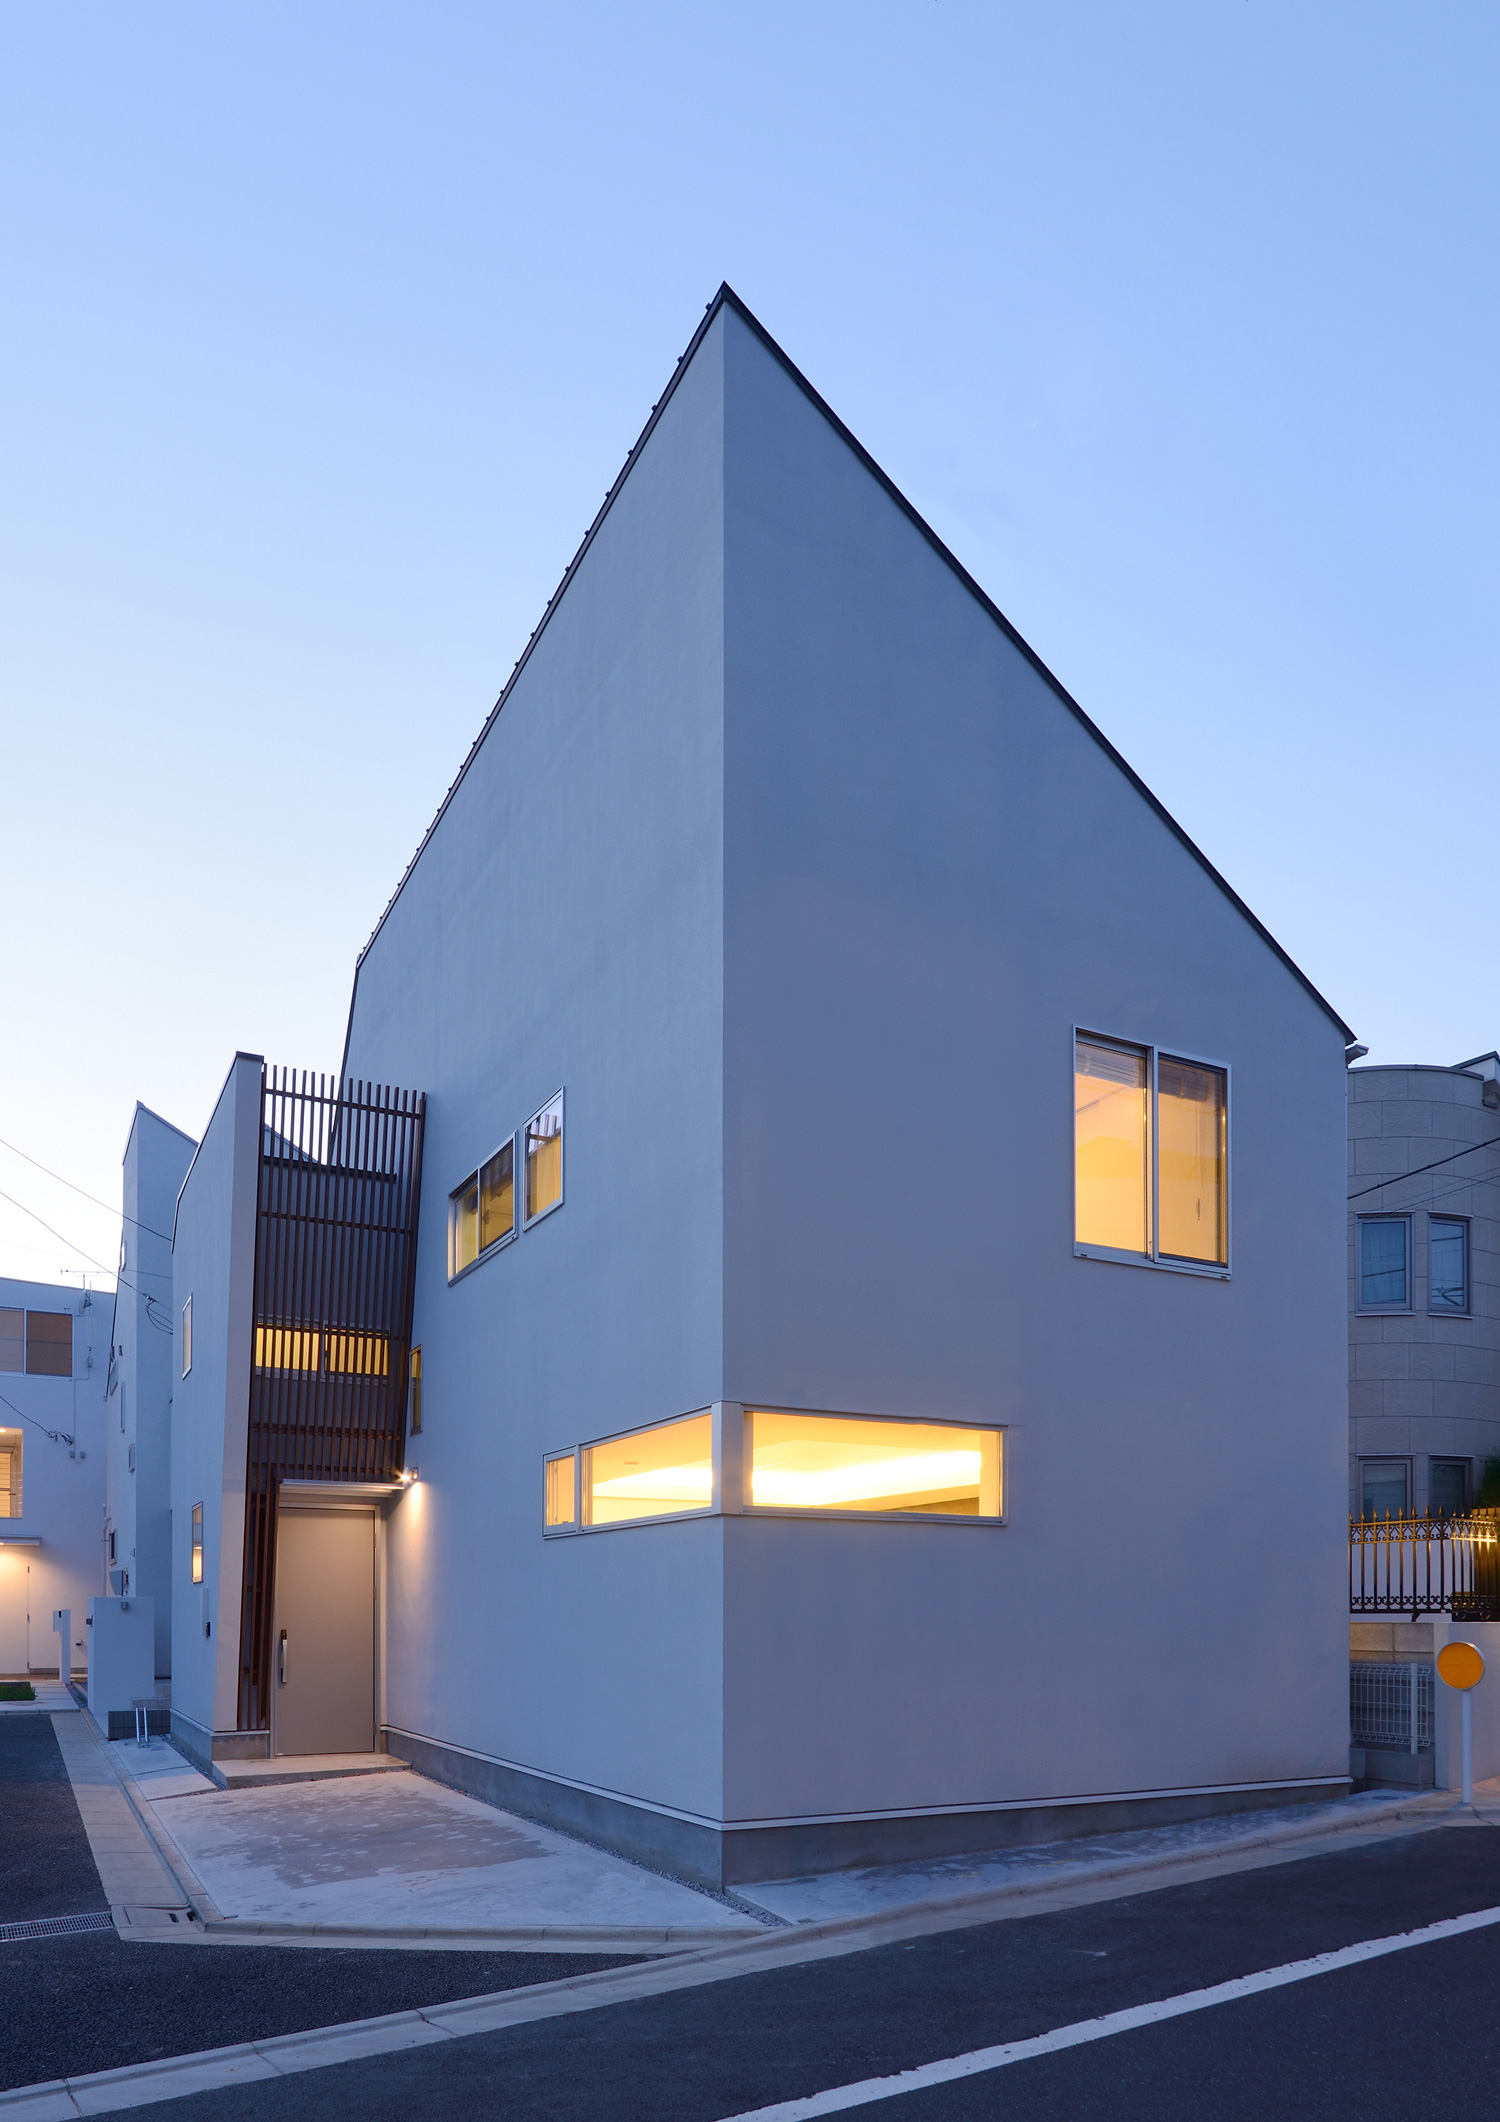 スリット窓から室内の光が漏れる、斜め屋根で白い外壁の住宅・デザイン住宅